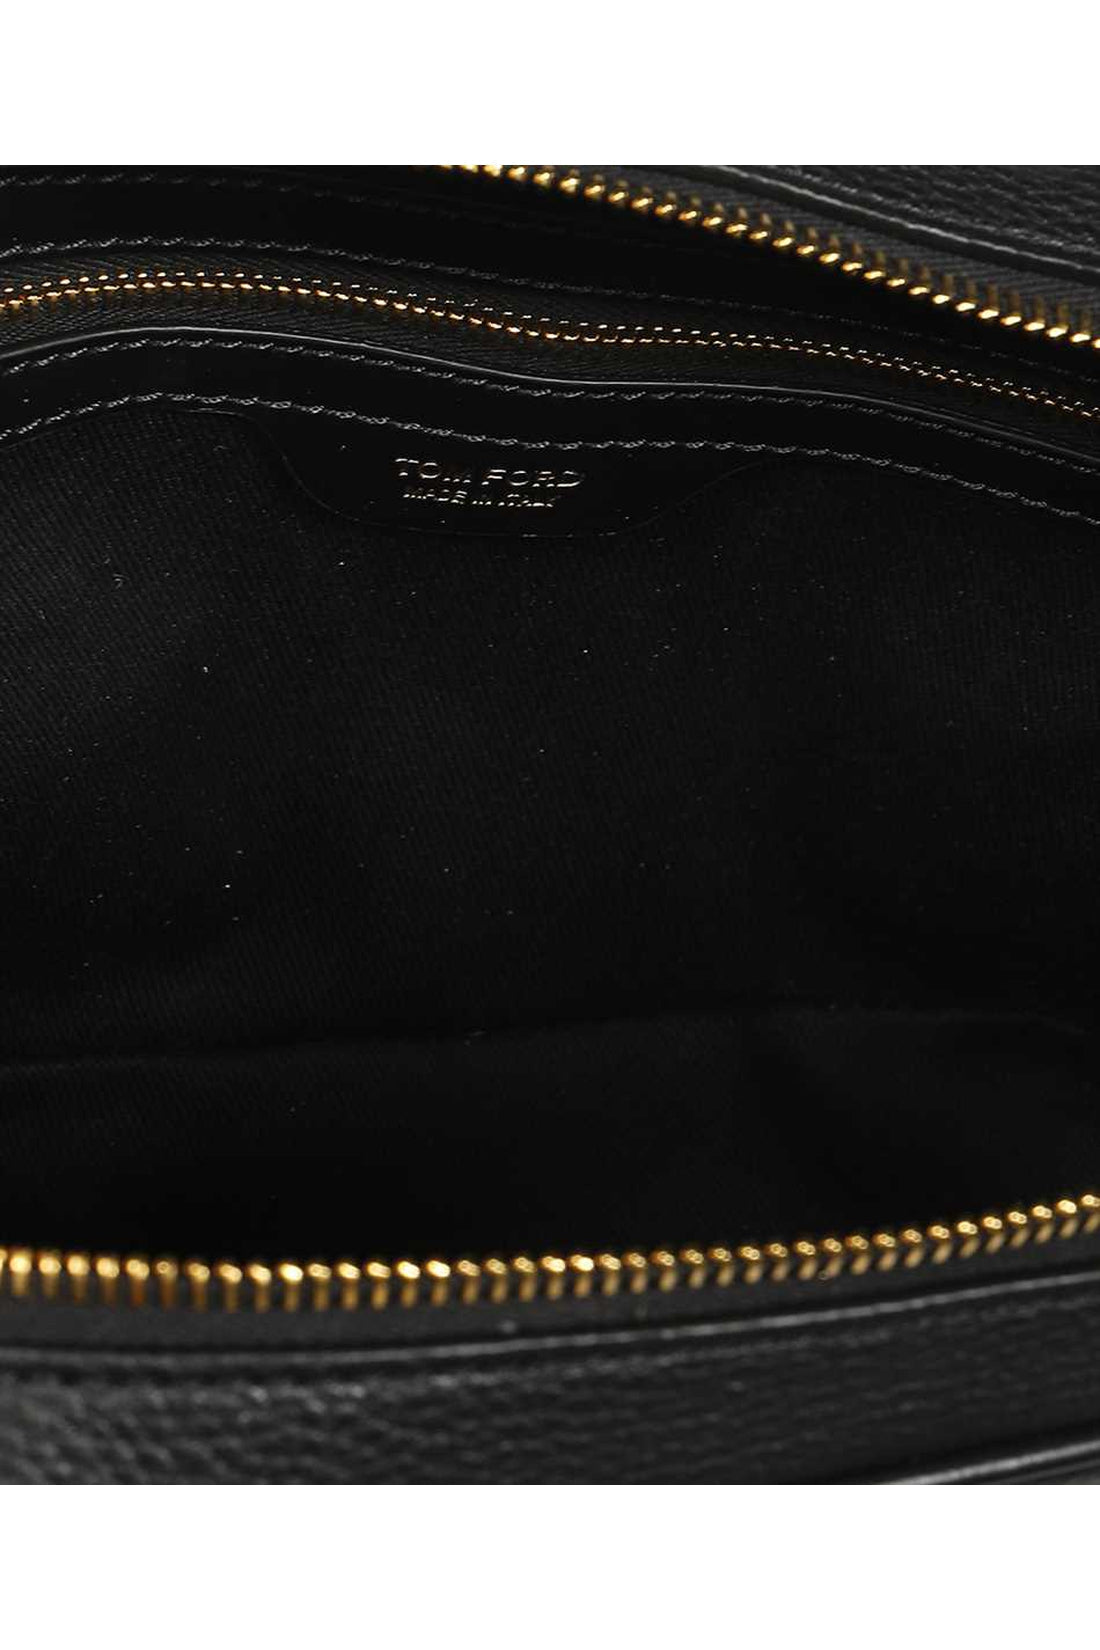 Tom Ford-OUTLET-SALE-Leather men's bag-ARCHIVIST